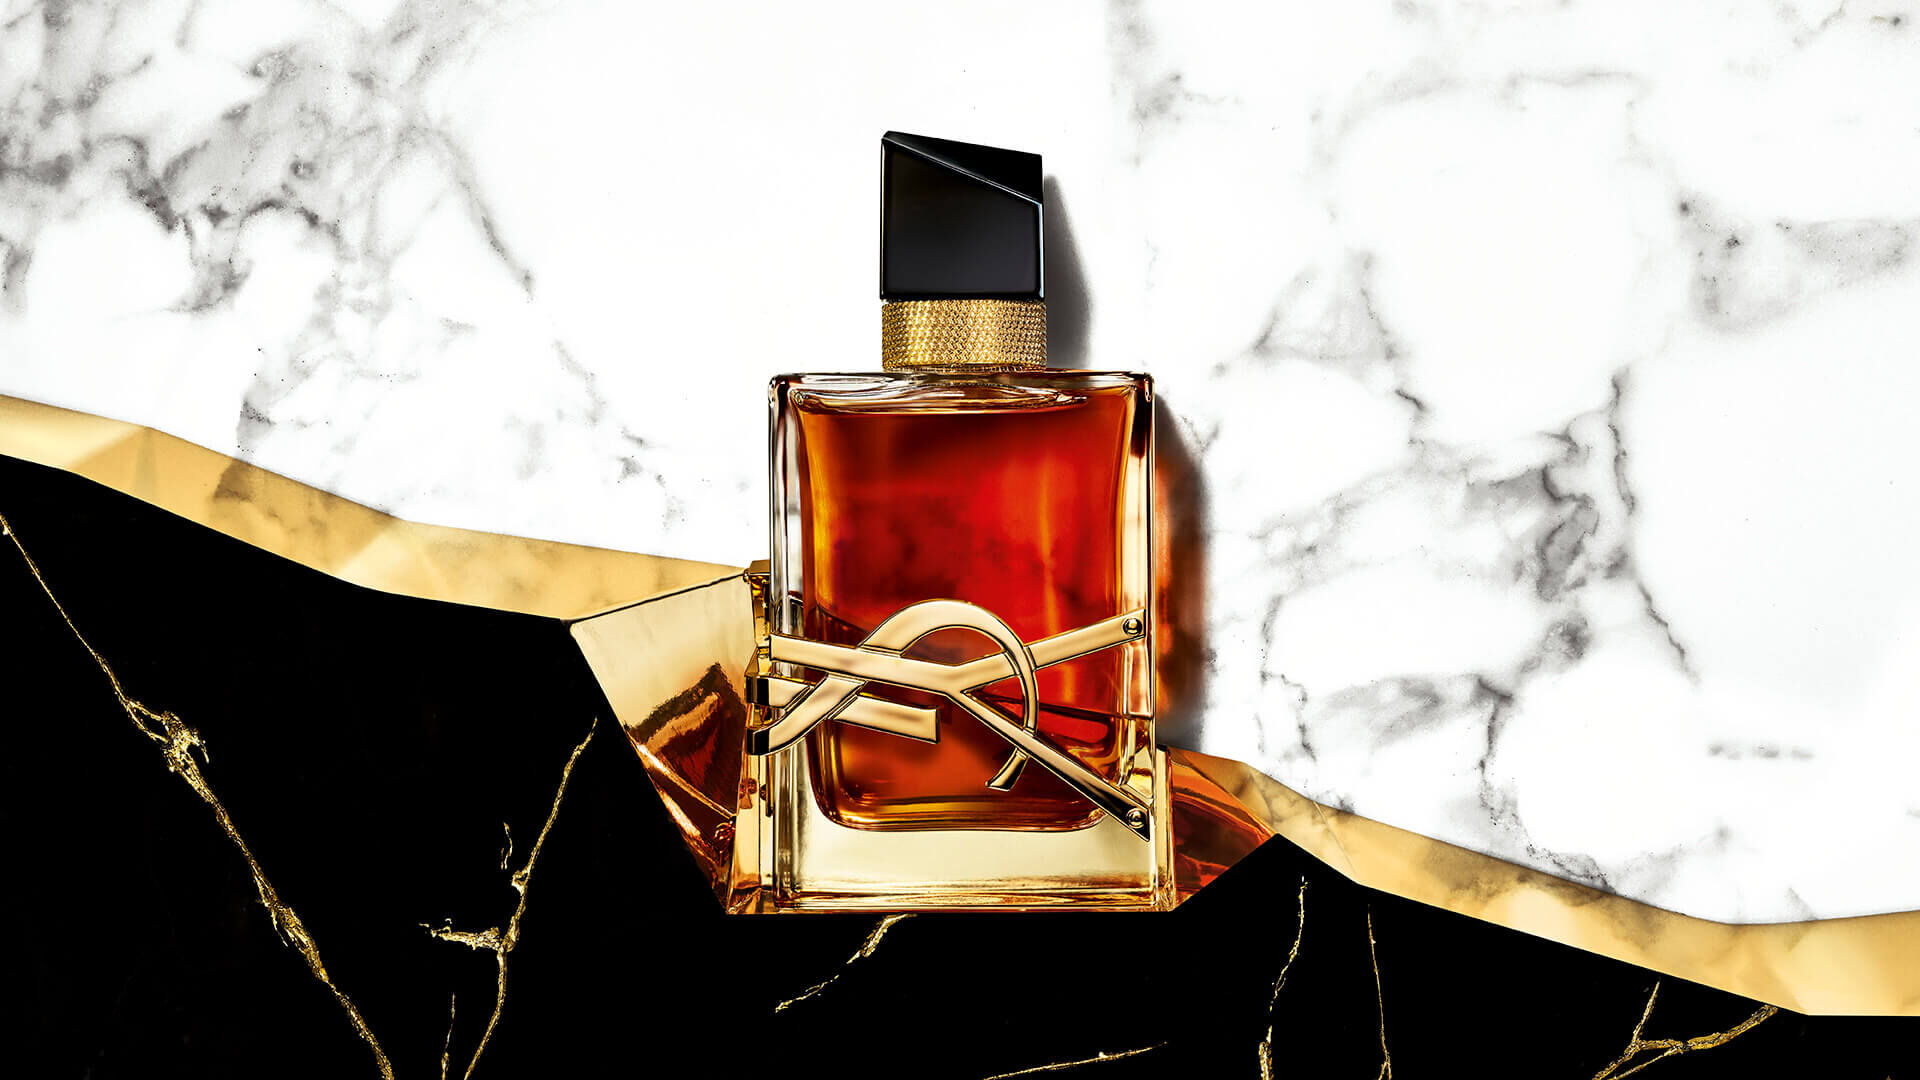 YSL Beauty's LIBRE Eau de Parfum - the scent of freedom.